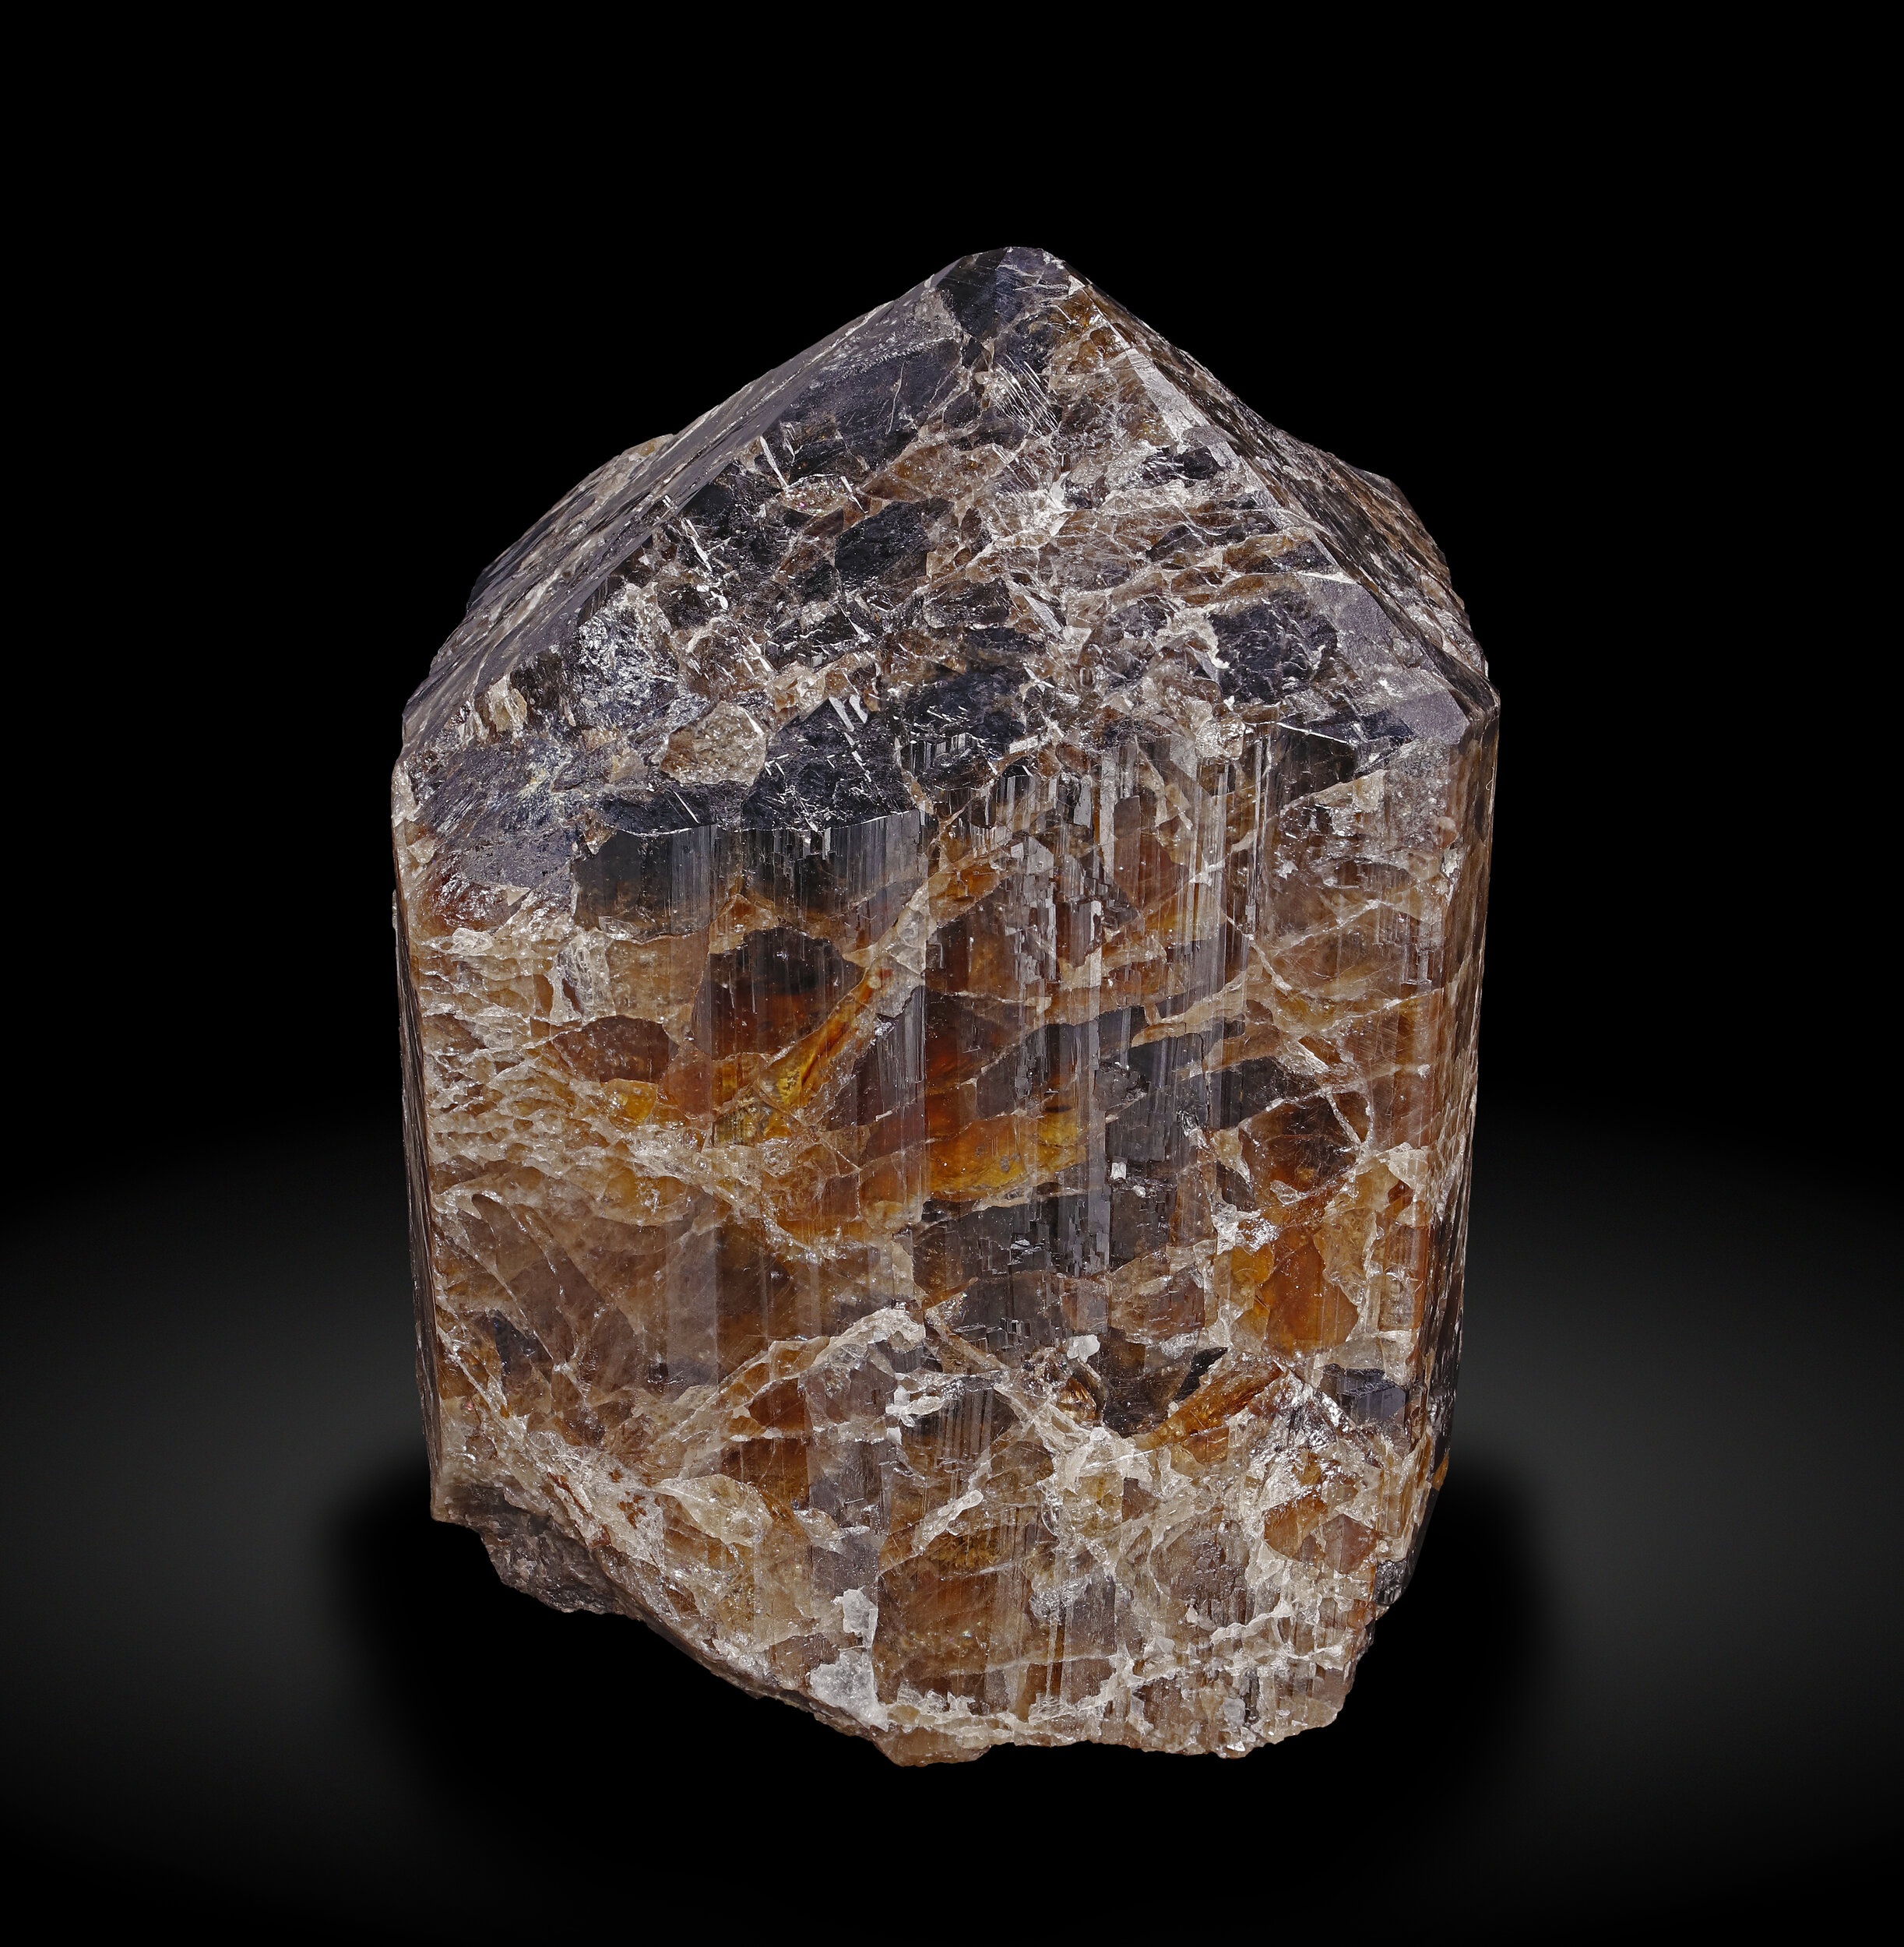 specimens/s_imagesAQ1/Cassiterite-JFD246AQ1_1243_f.jpg